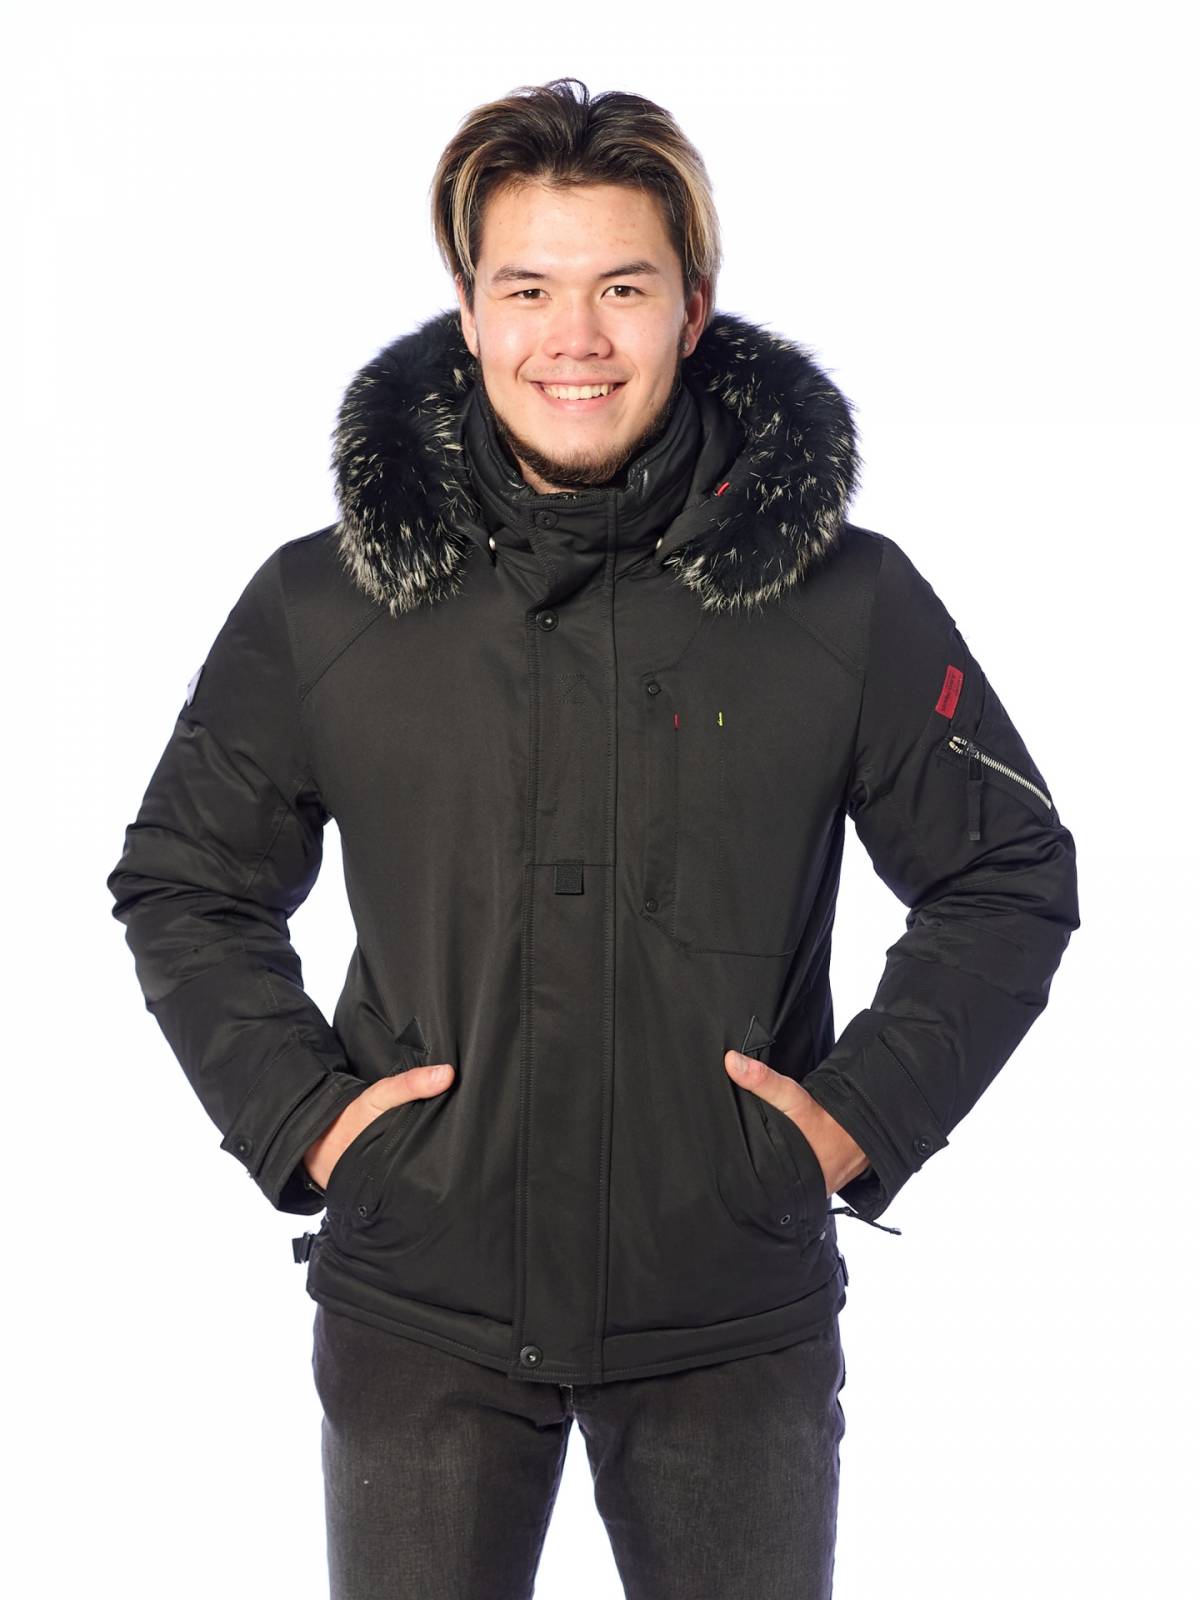 Зимняя куртка мужская Shark Force 4191 черная 54 RU